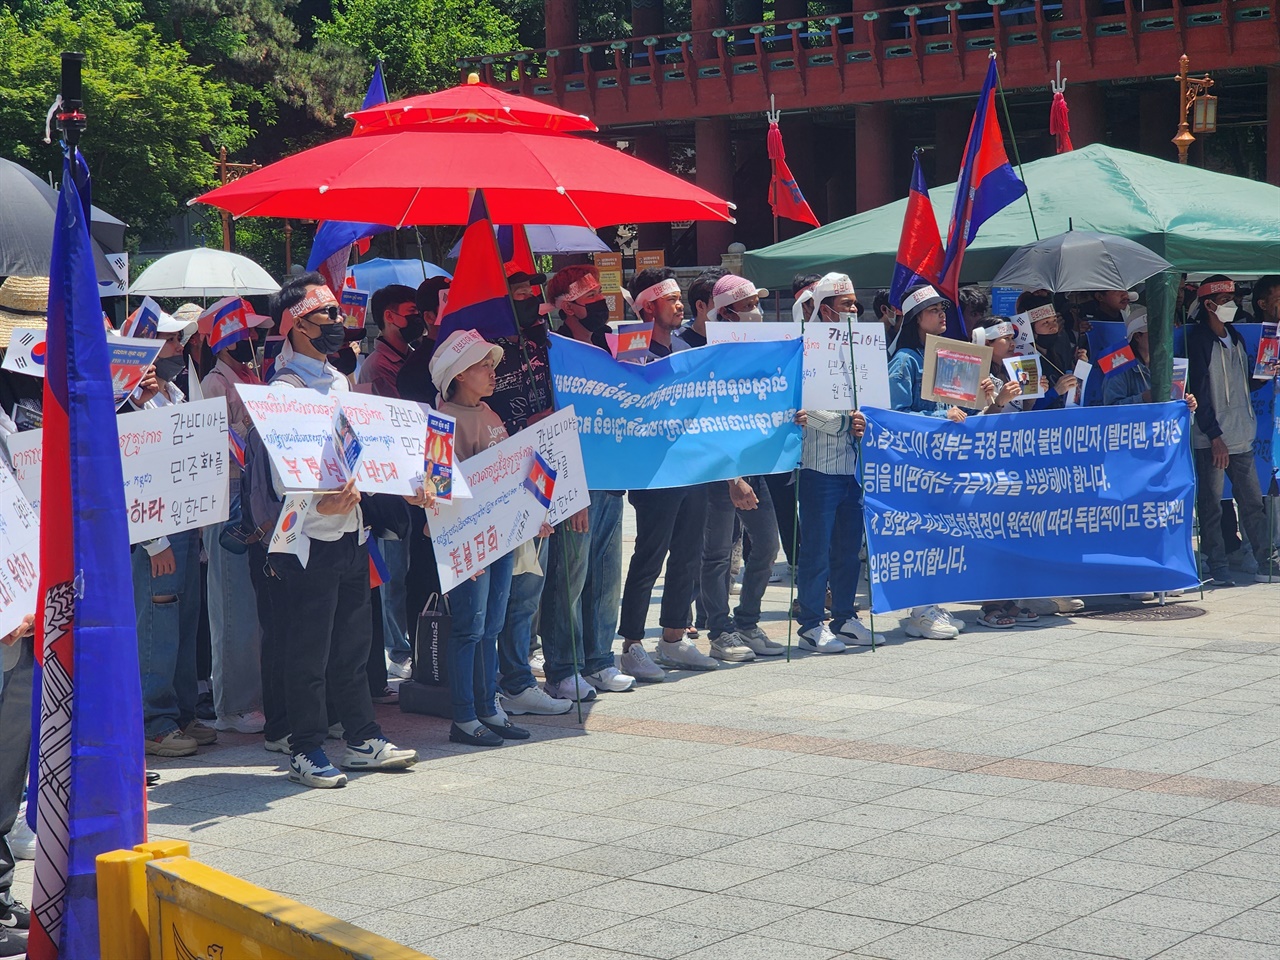 5월 19일 종각에서 열린 집회에 참석한 참가자들의 모습